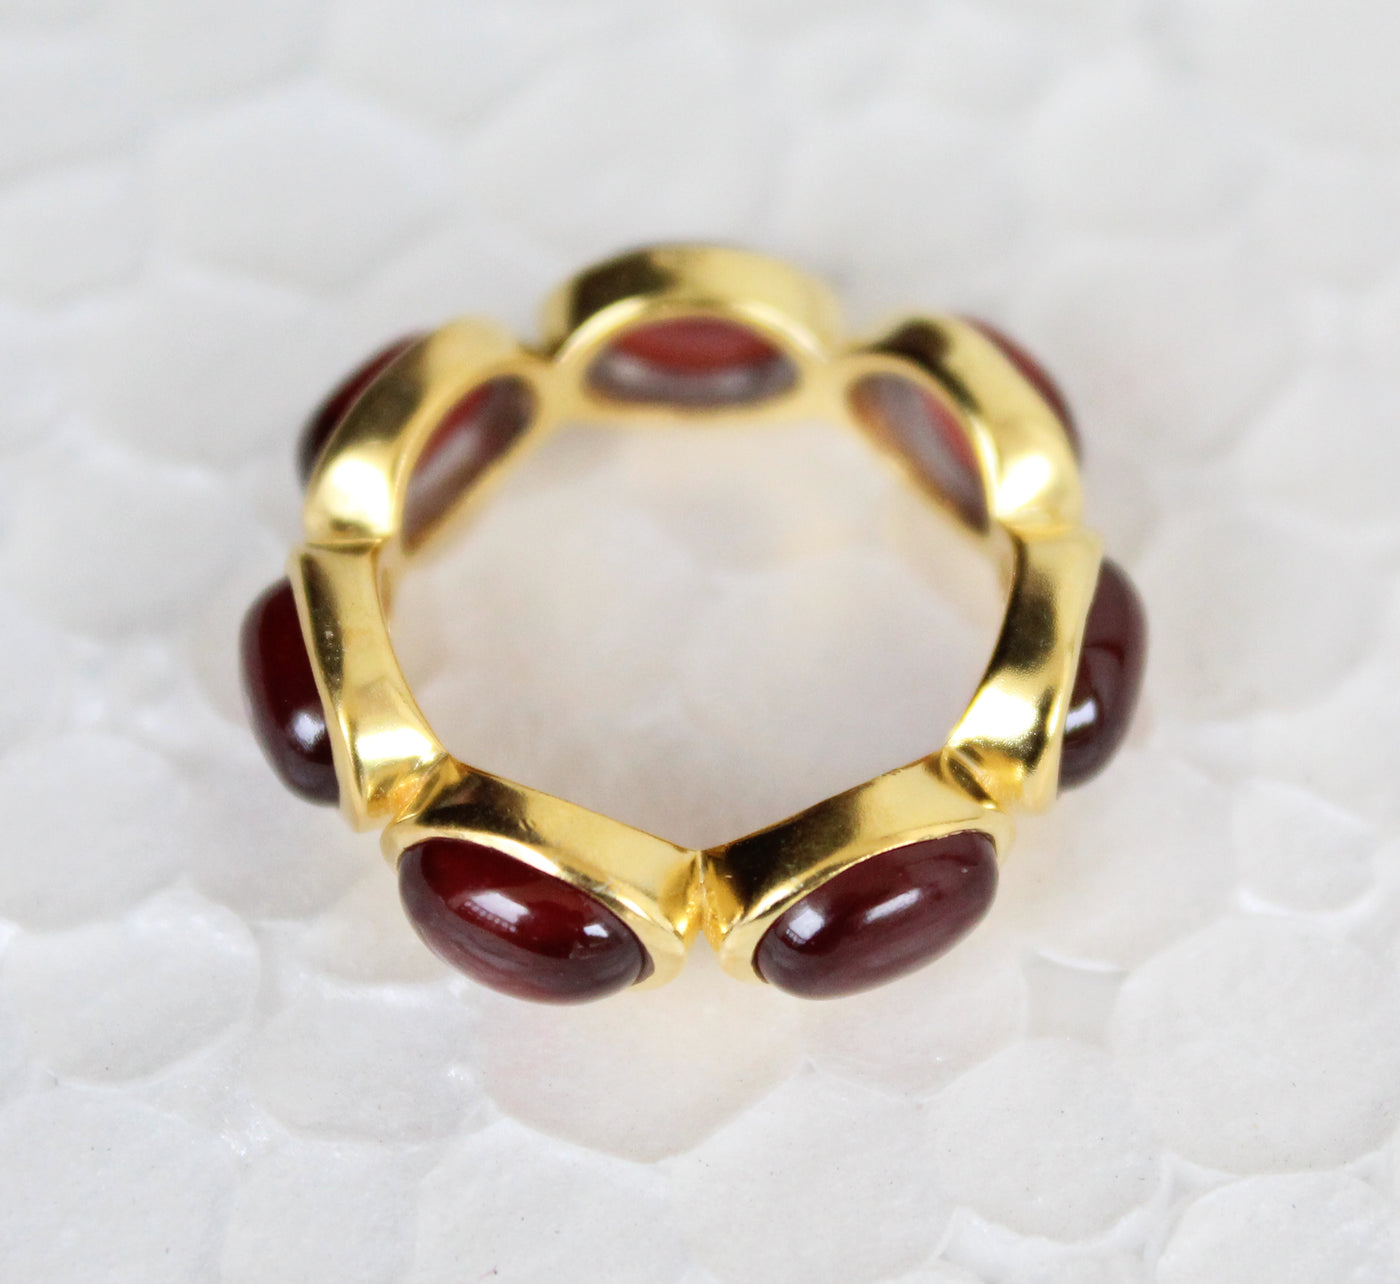 Natural Garnet Band, 7X5 mm oval Garnet Ring, 925 Sterling Silver, Designer Handmade Ring, January Birthstone, Cocktail Ring,Rings for Women